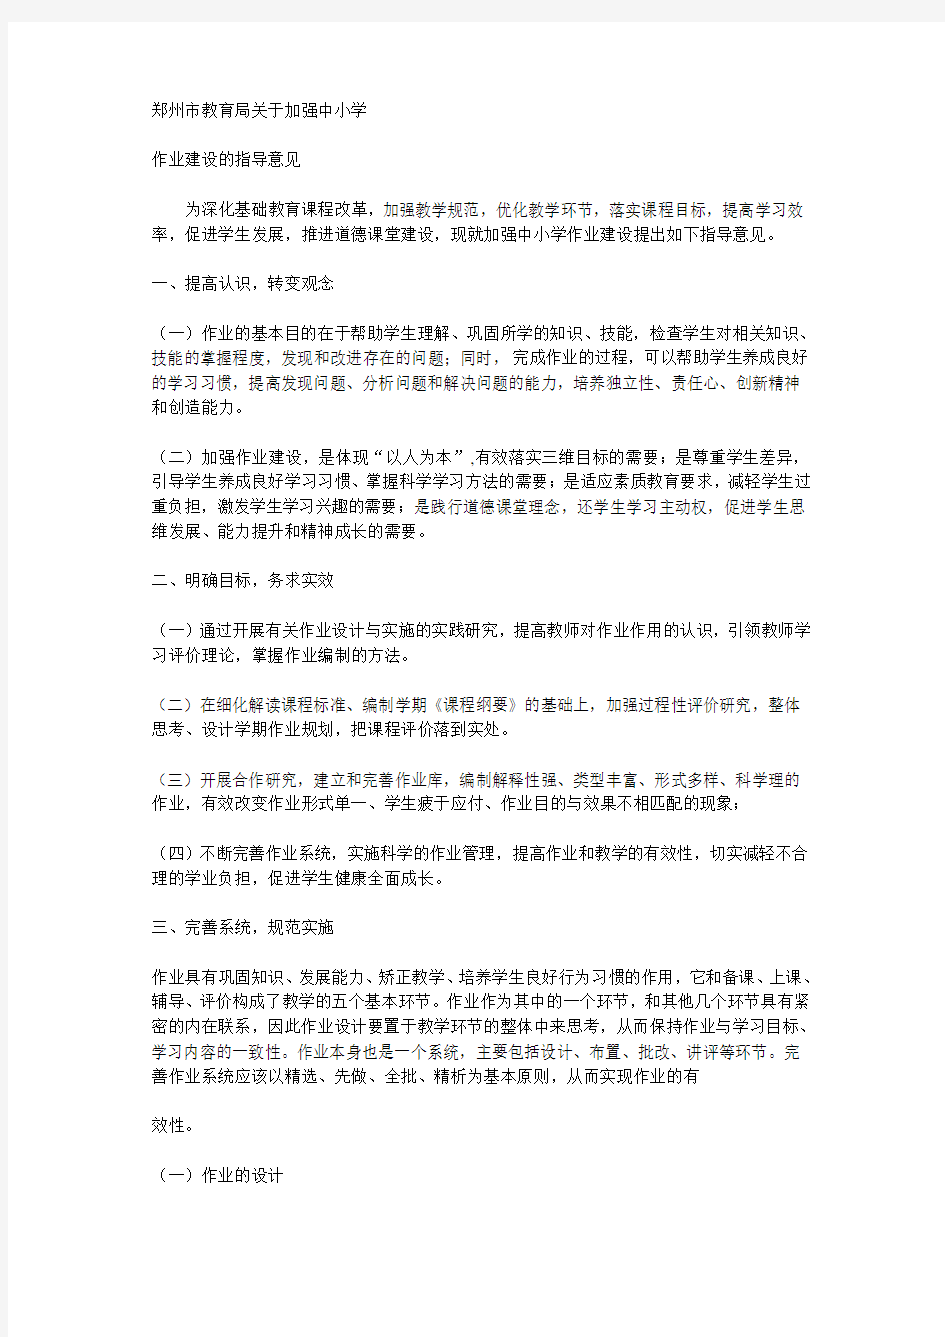 郑州市教育局关于加强中小学作业建设的指导意见